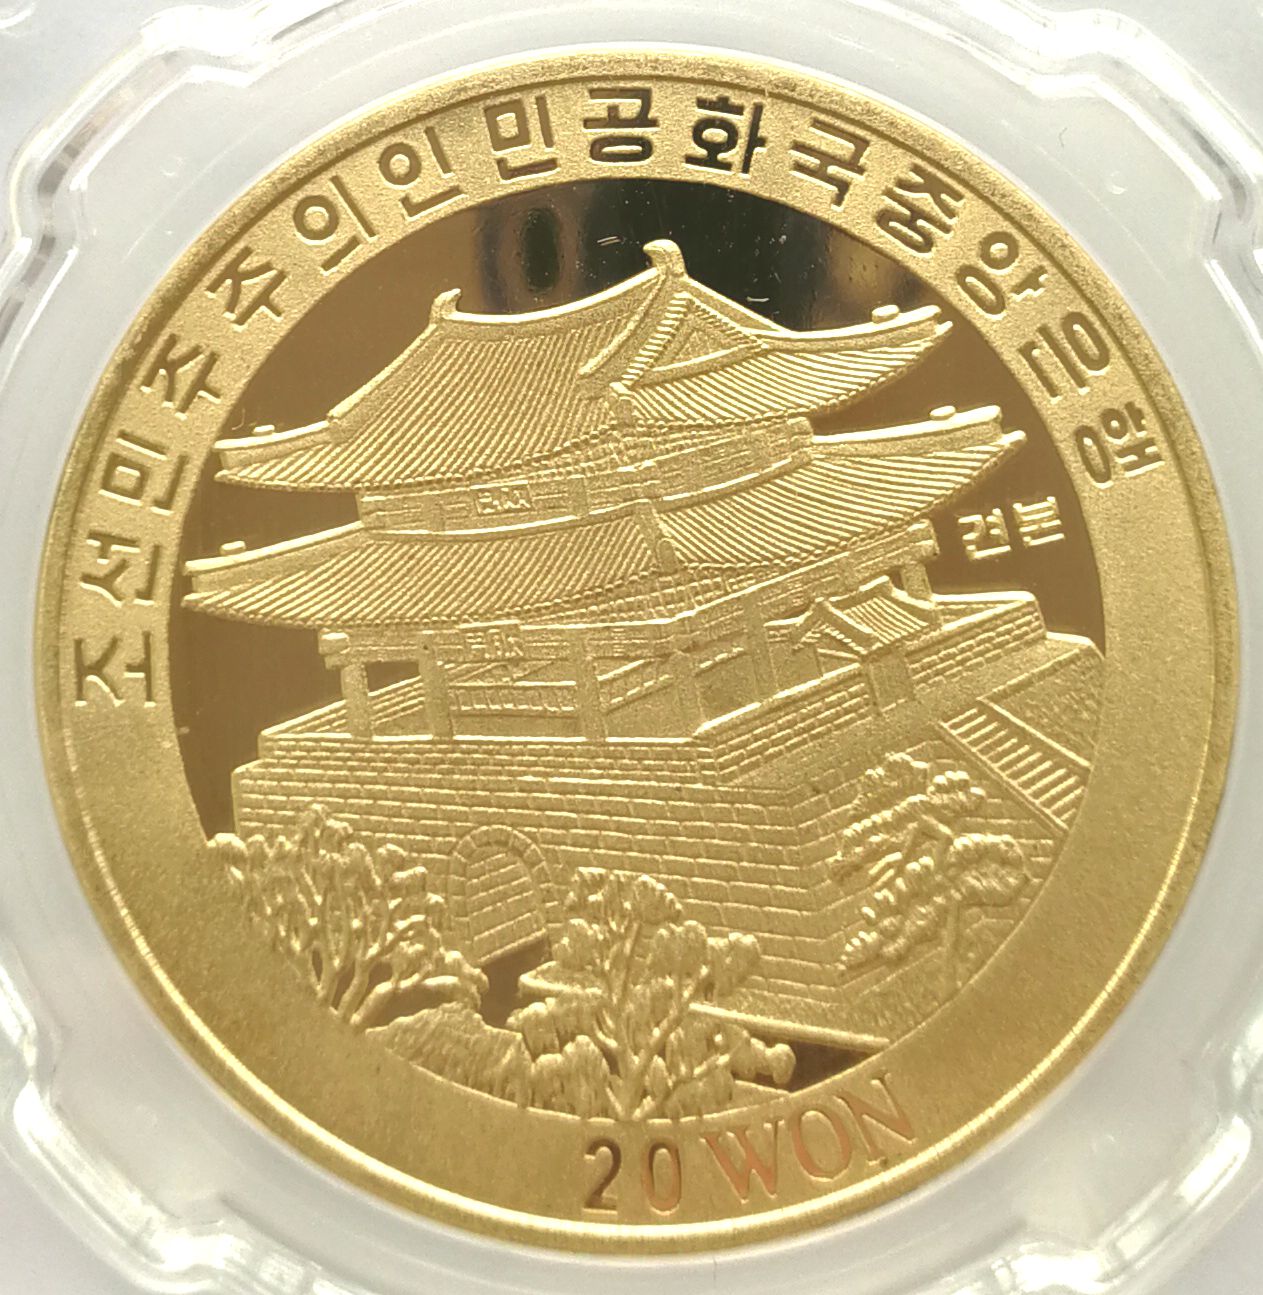 L3377, Korea "Taewondo" Proof Bronze Coin 2001, Rare Specimen, CSIS Grade - Click Image to Close